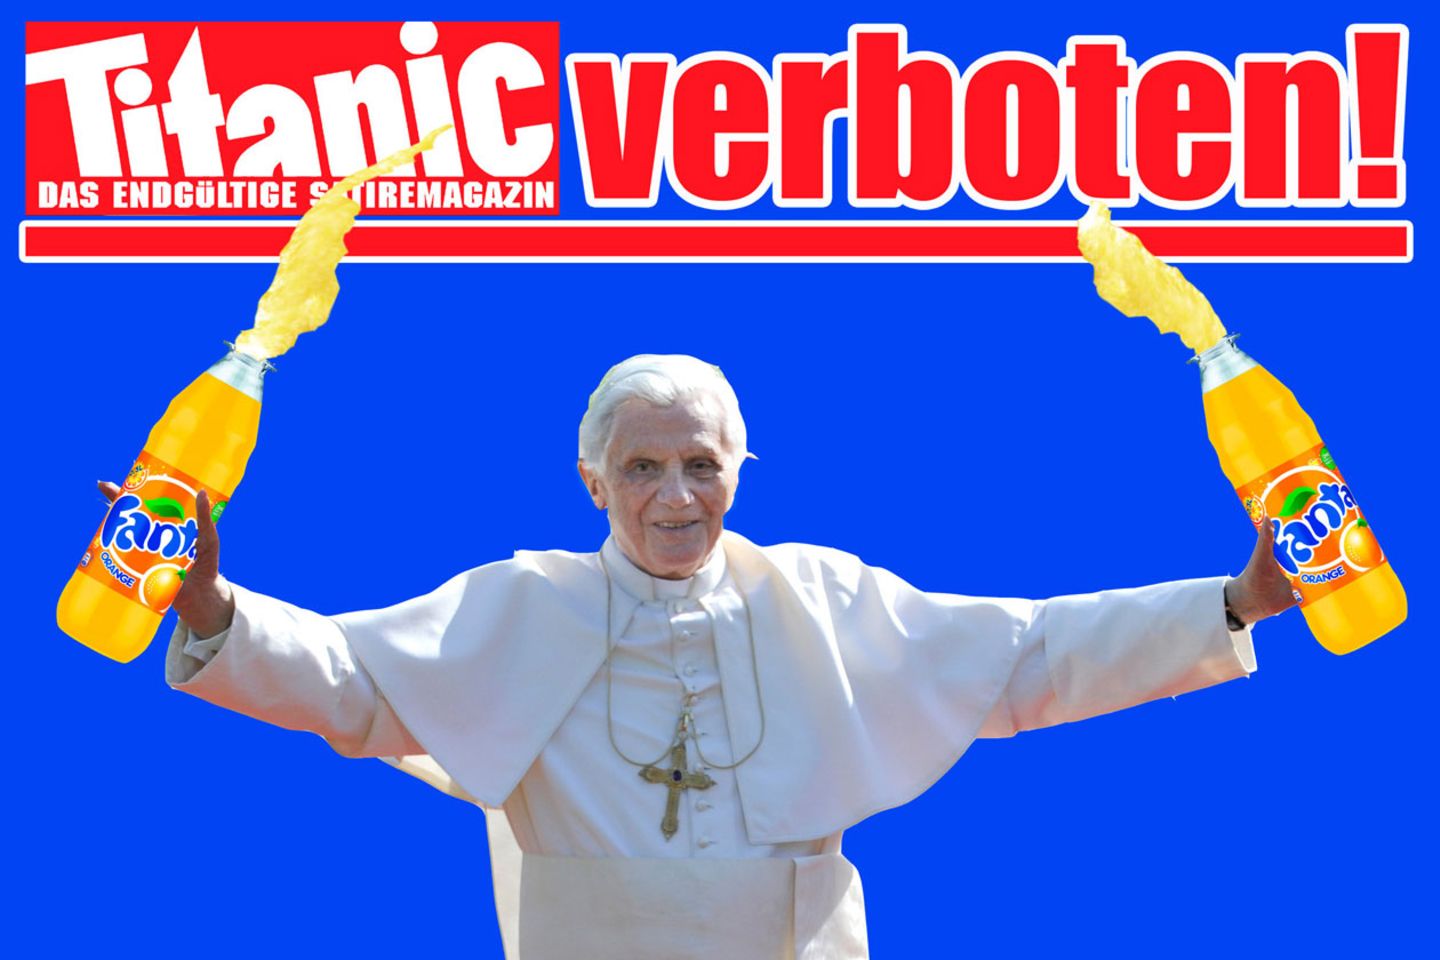 Unter dem Titel "Halleluja im Vatikan - Die undichte Stelle ist gefunden!" hatte die "Titanic" 2012 den Papst von vorne und hinten gezeigt - einmal mit gelbem, einmal mit braunem Fleck auf der Soutane. Nachdem das Hamburger Landgericht diesen Titel verboten hatte, zeigt das Satiremagazin auf der Homepage Benedikt XVI. mit zwei riesigen Limonadenflaschen